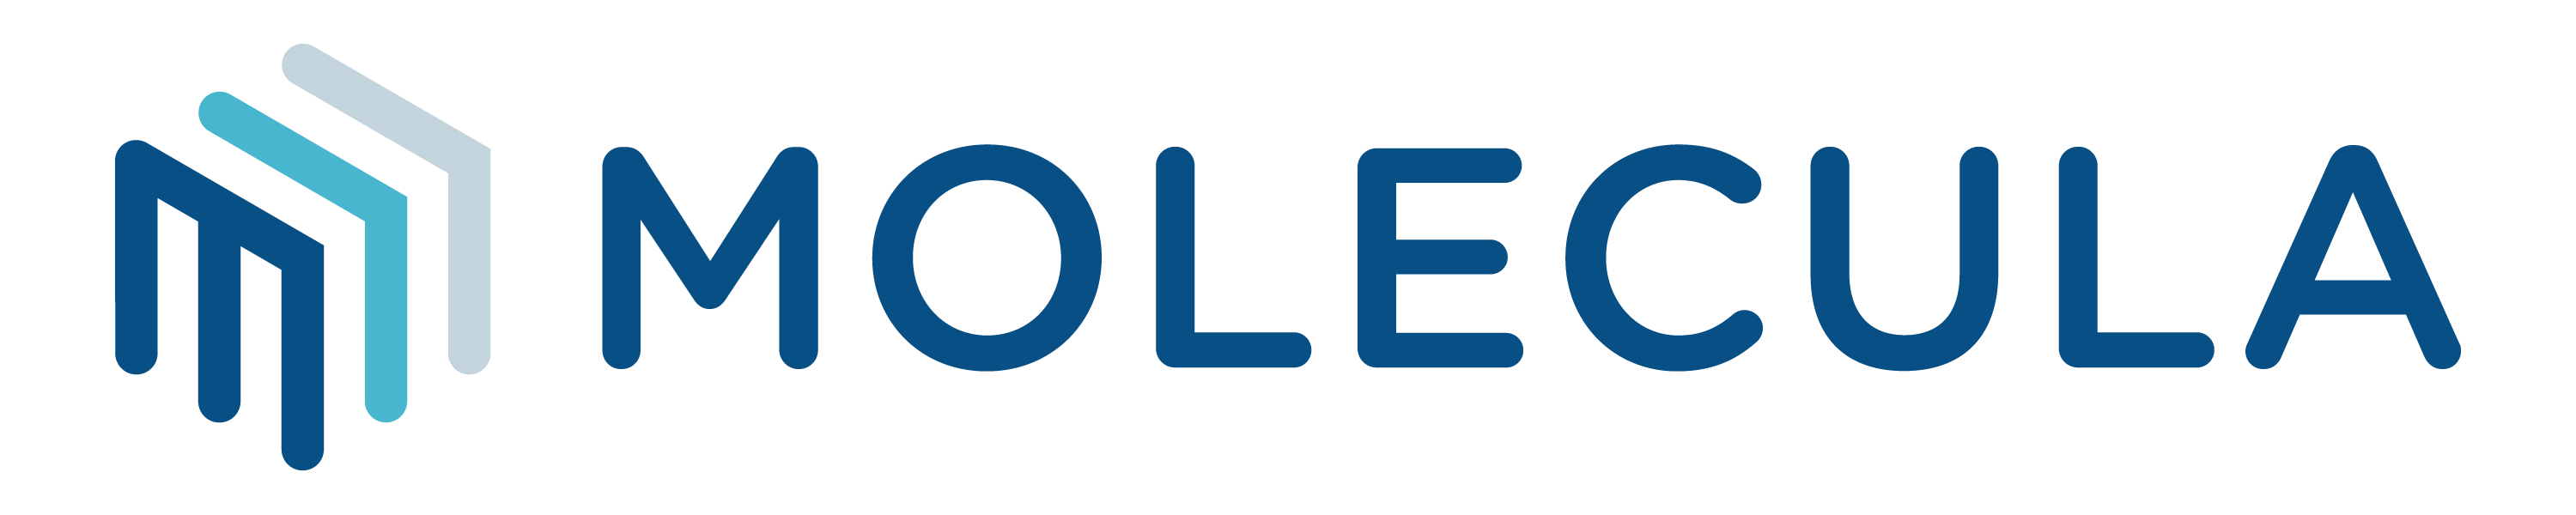 Molecula logo